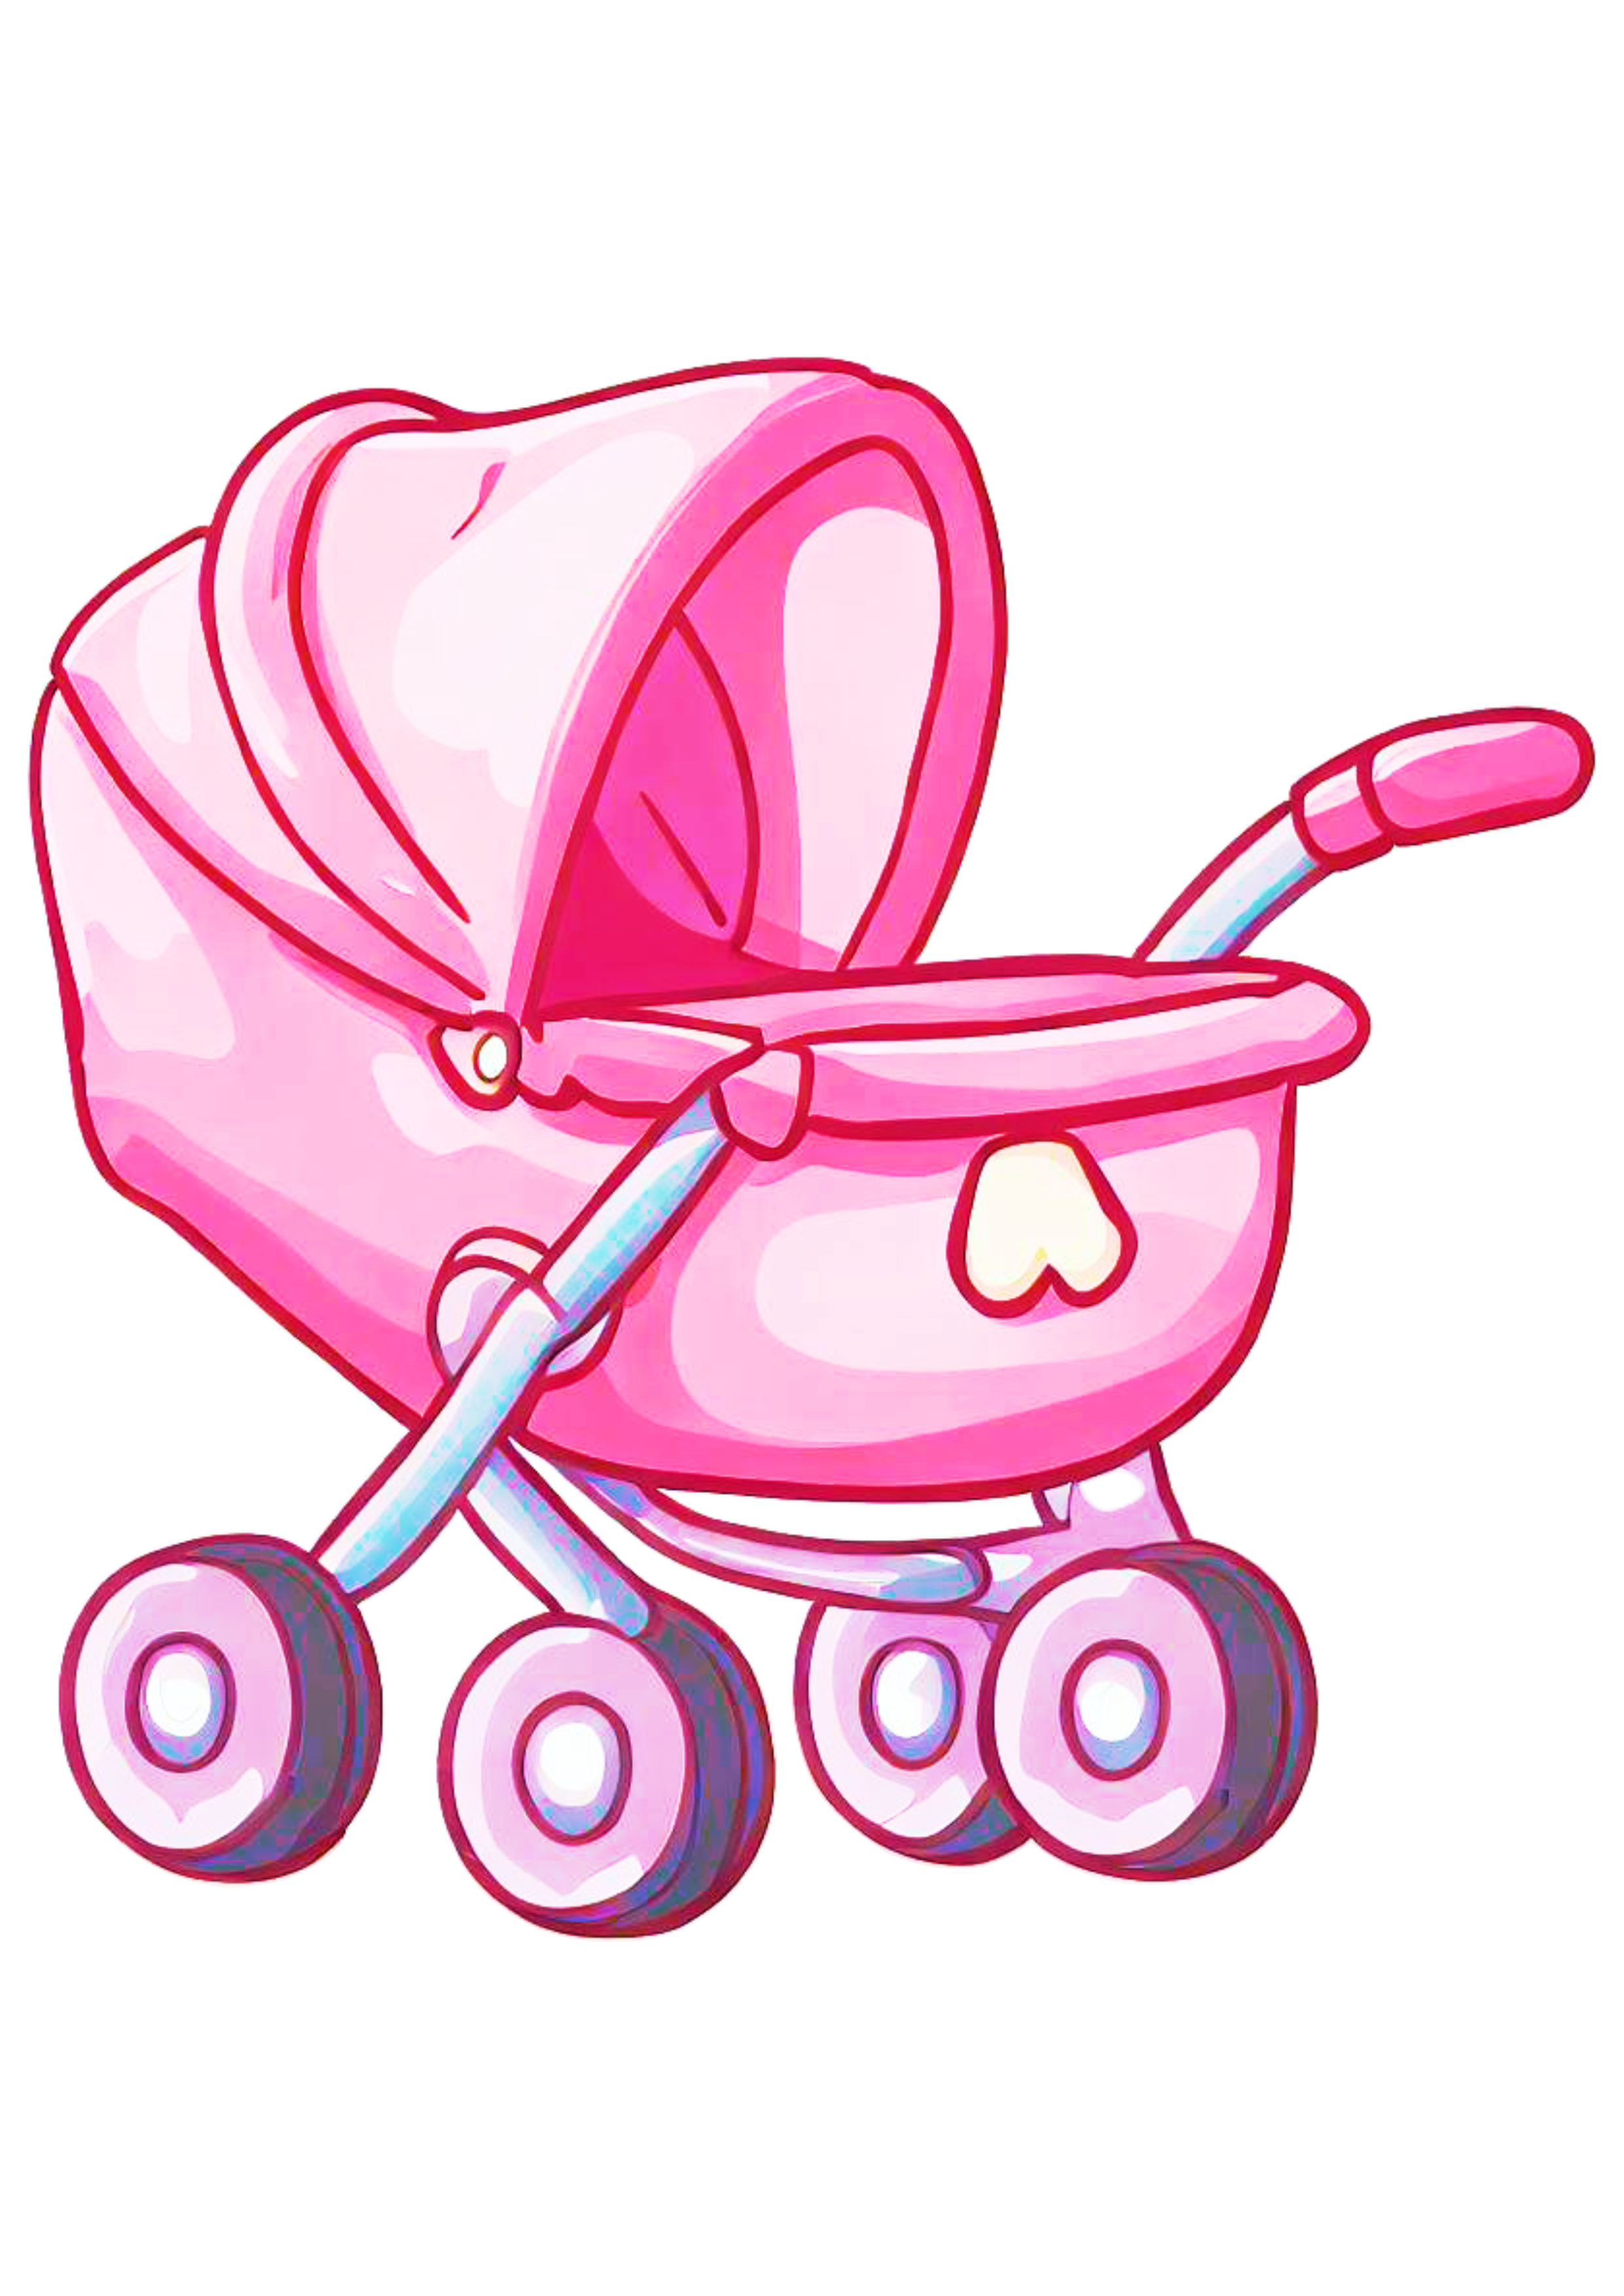 Carrinho de bebê bonitinho desenho simples ilustração rosa design artes gráficas png